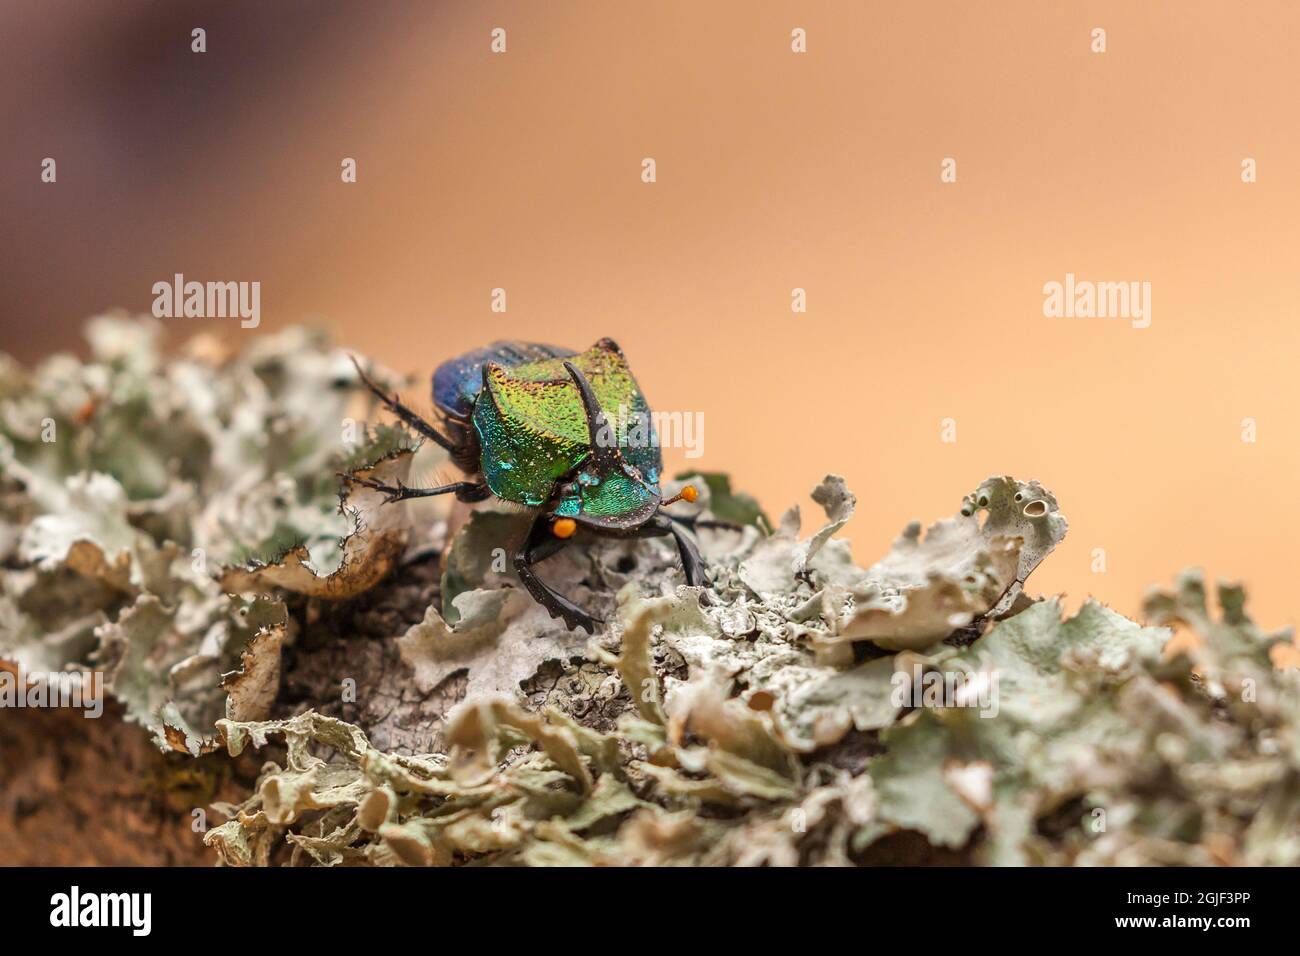 États-Unis, Texas, comté de Hidalgo. Gros plan du scarabée arc-en-ciel sur la branche. Banque D'Images